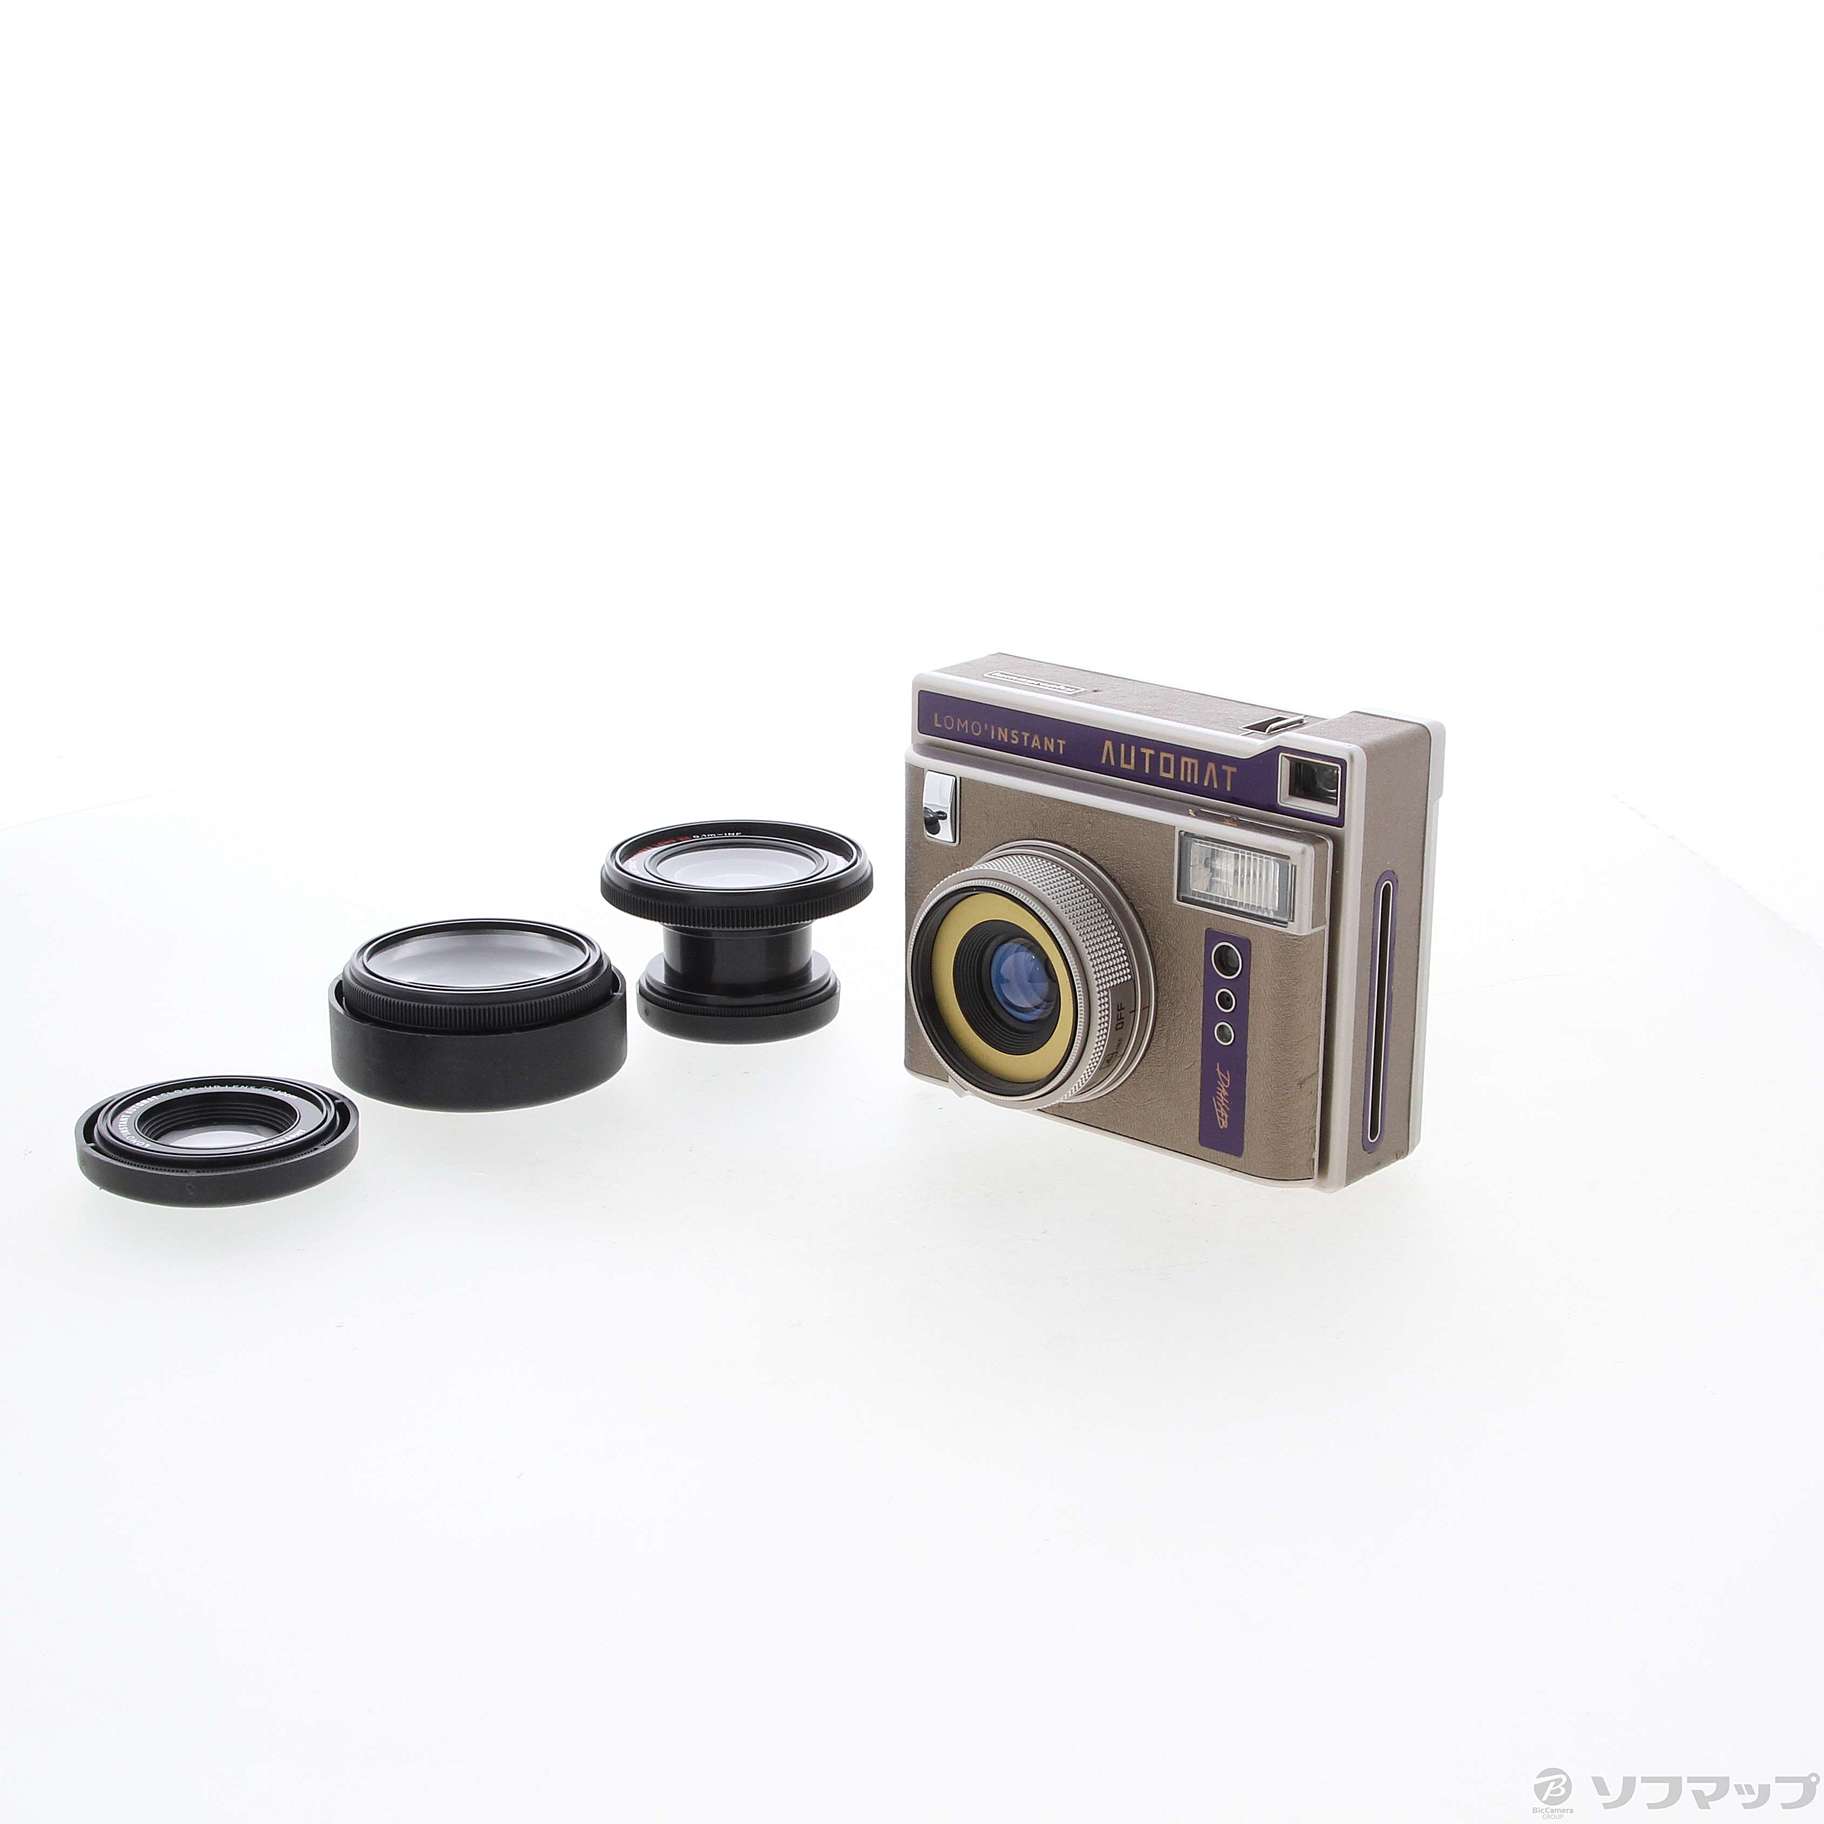 〔展示品〕 li850dahab Lomo Instant Automat Lens set